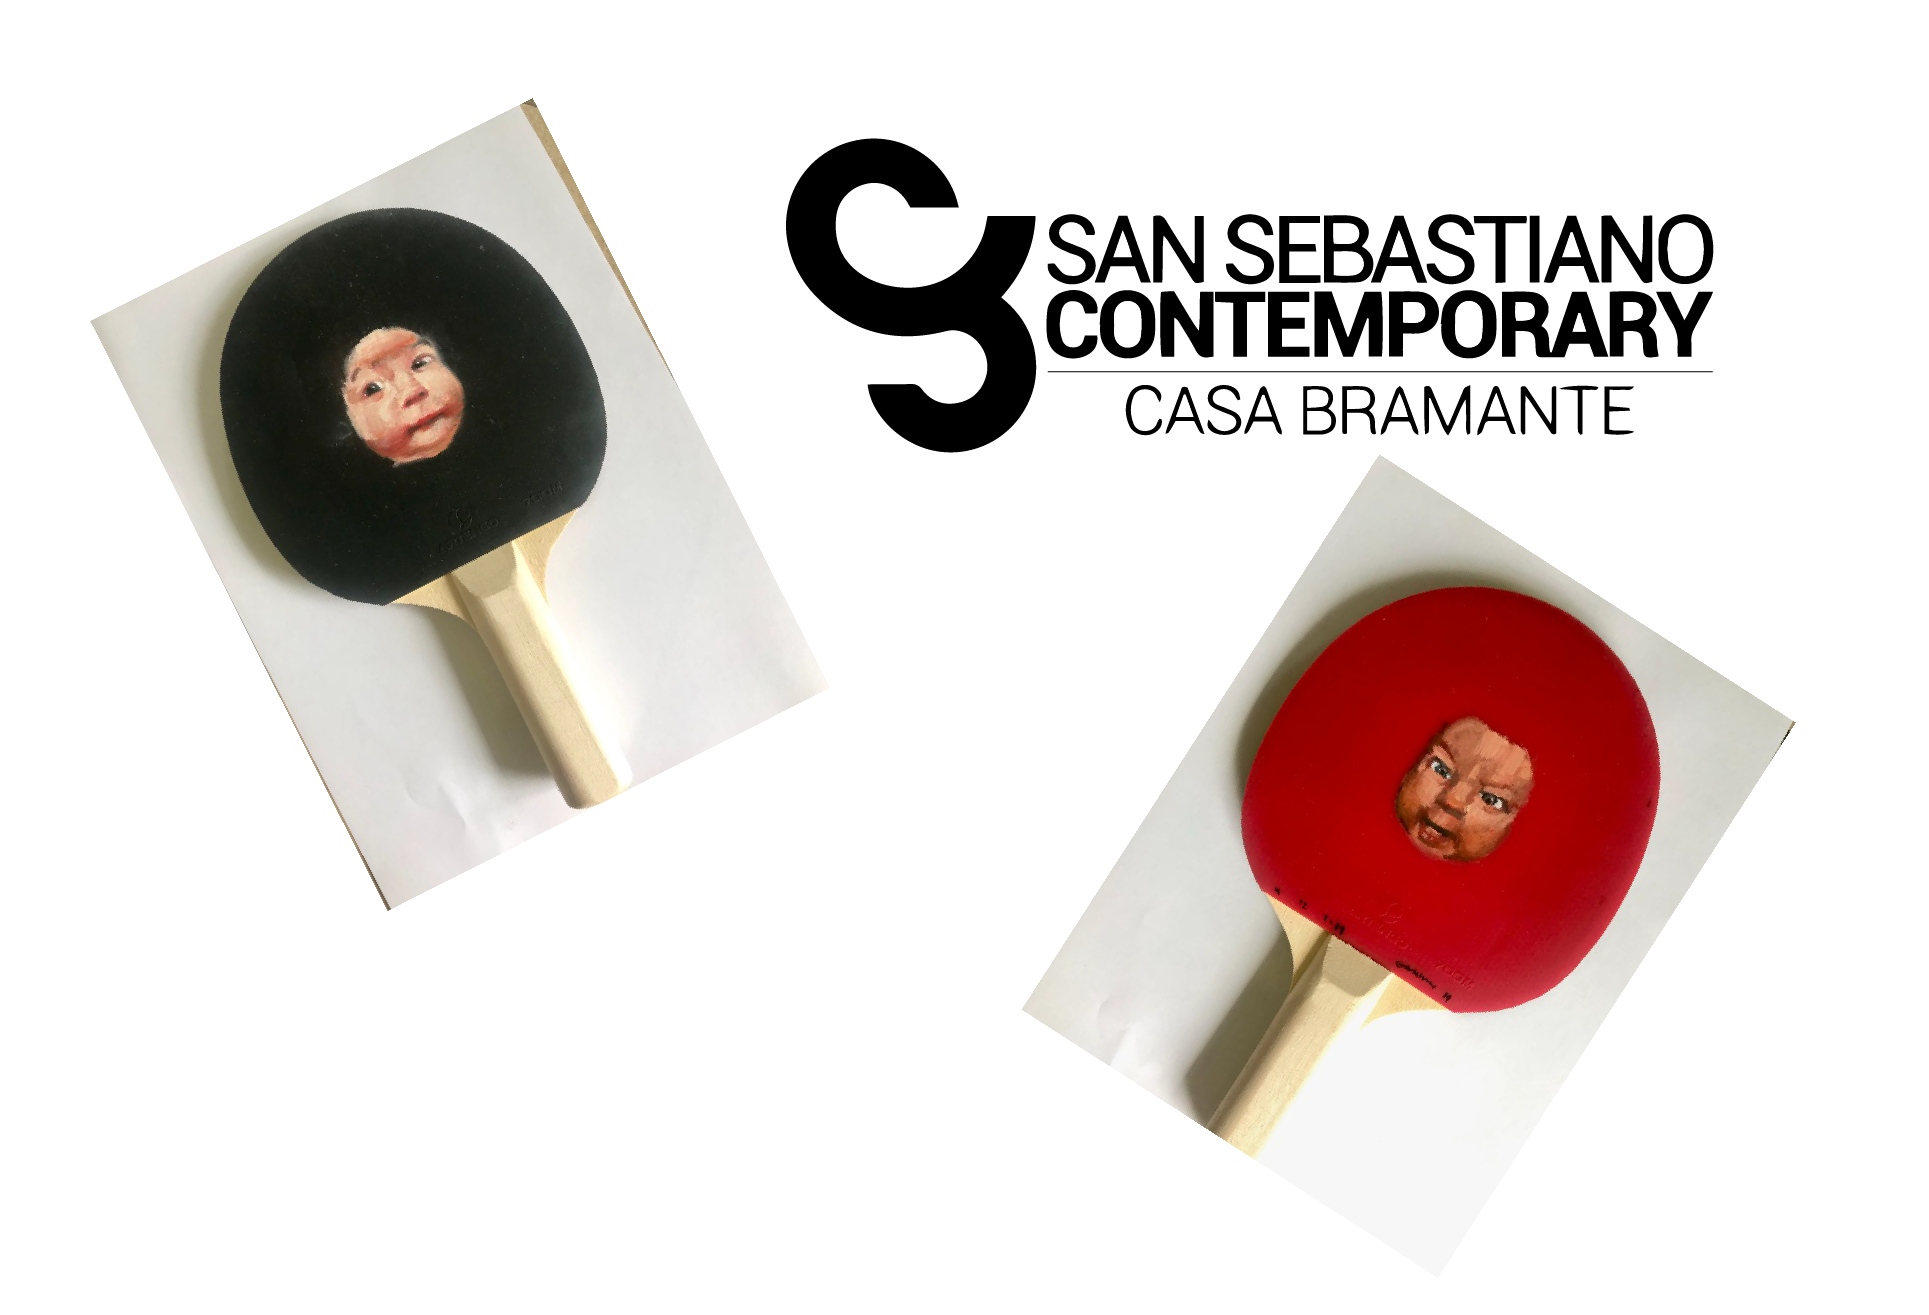 SAN SEBASTIANO CONTEMPORARY / CASA BRAMANTE